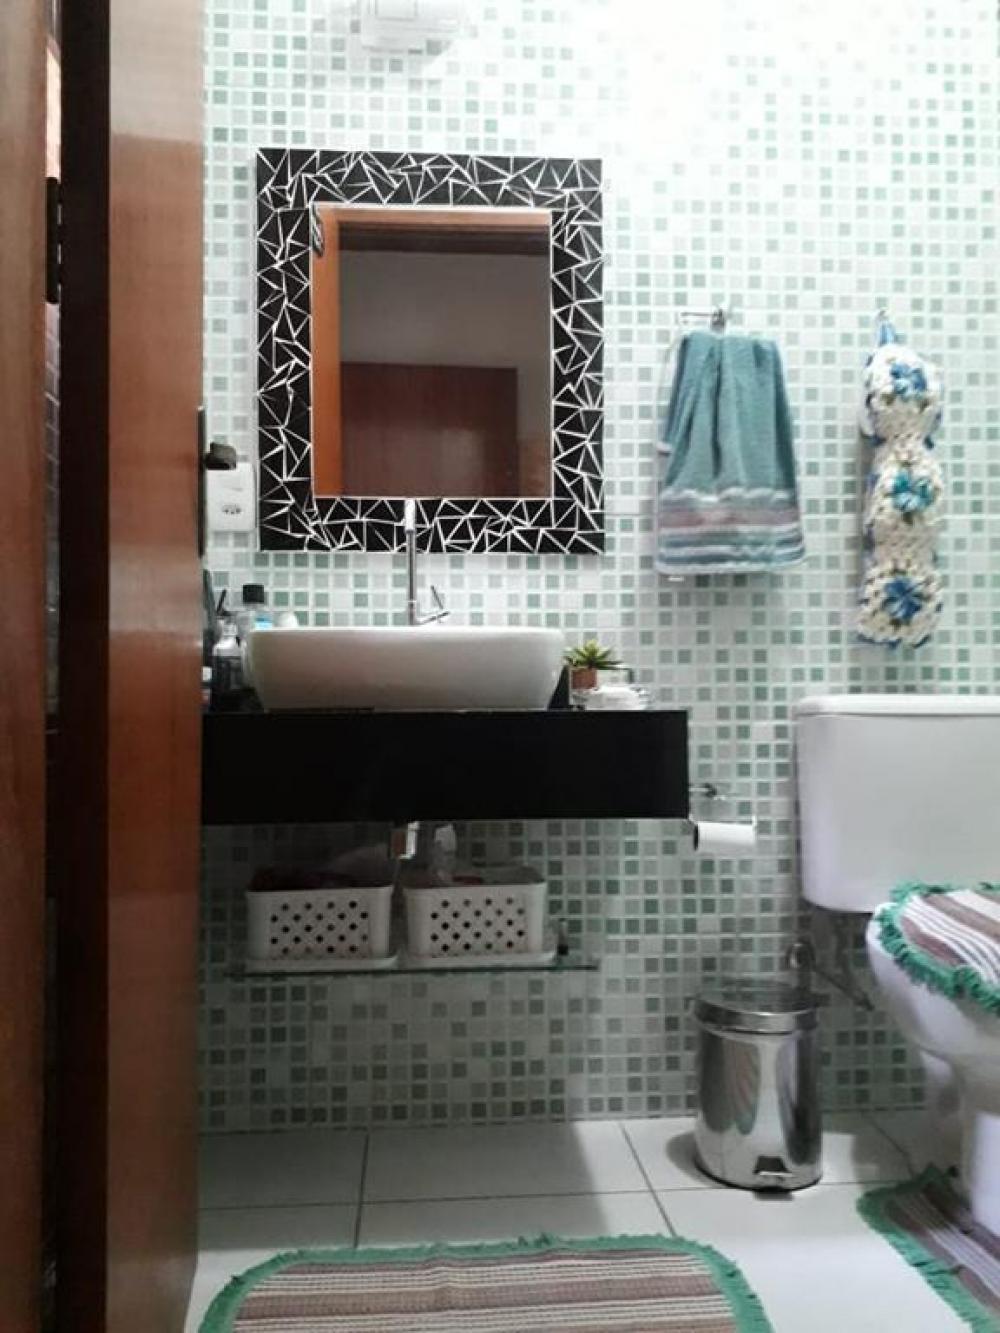 Comprar Casa / Padrão em São José do Rio Preto R$ 350.000,00 - Foto 17